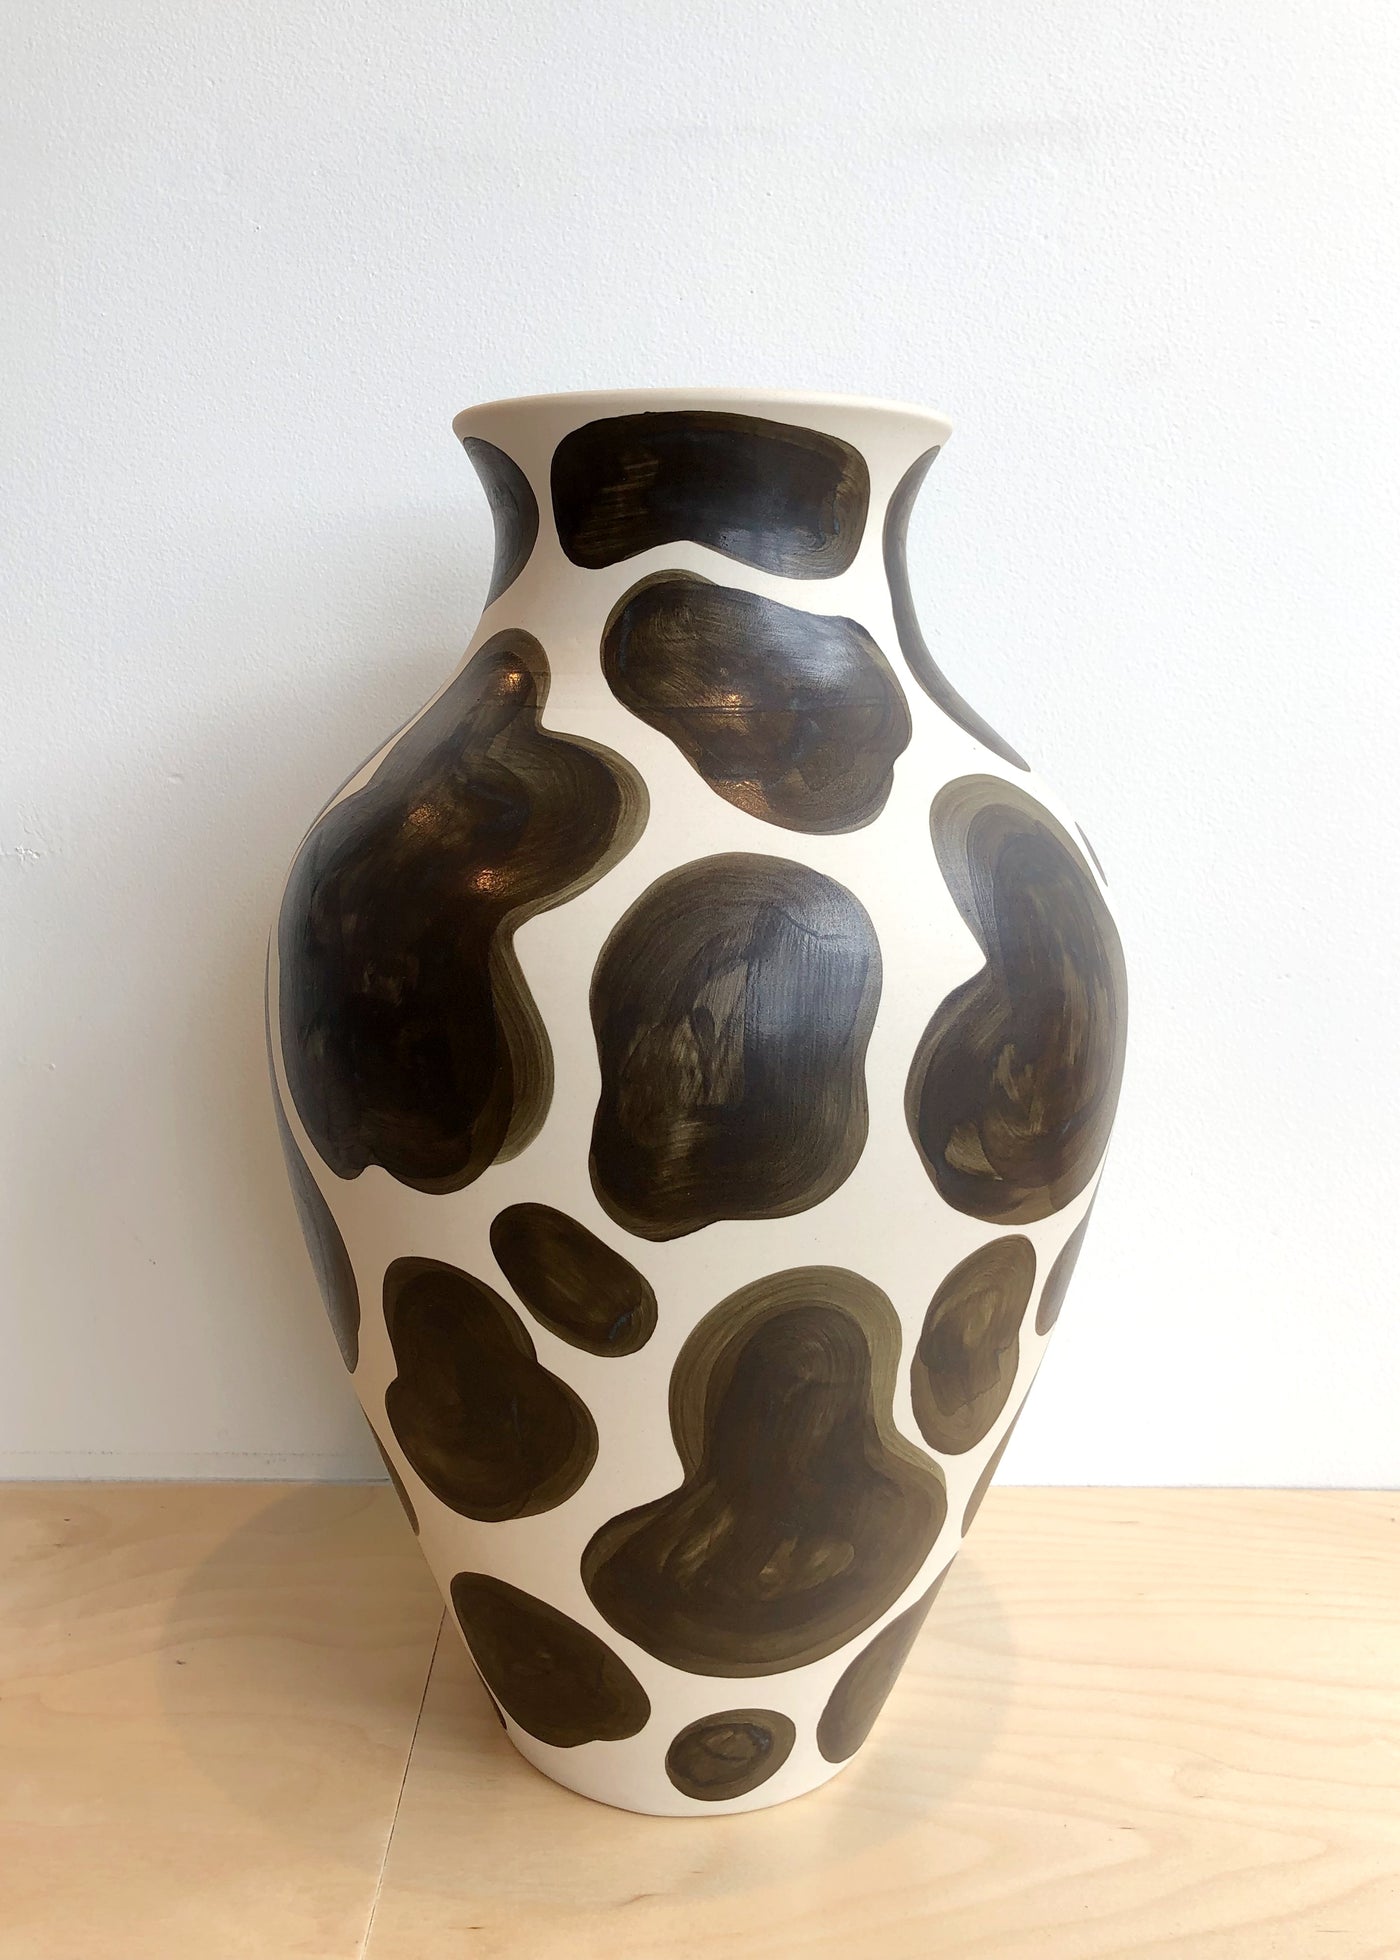 Cow Print Vase II